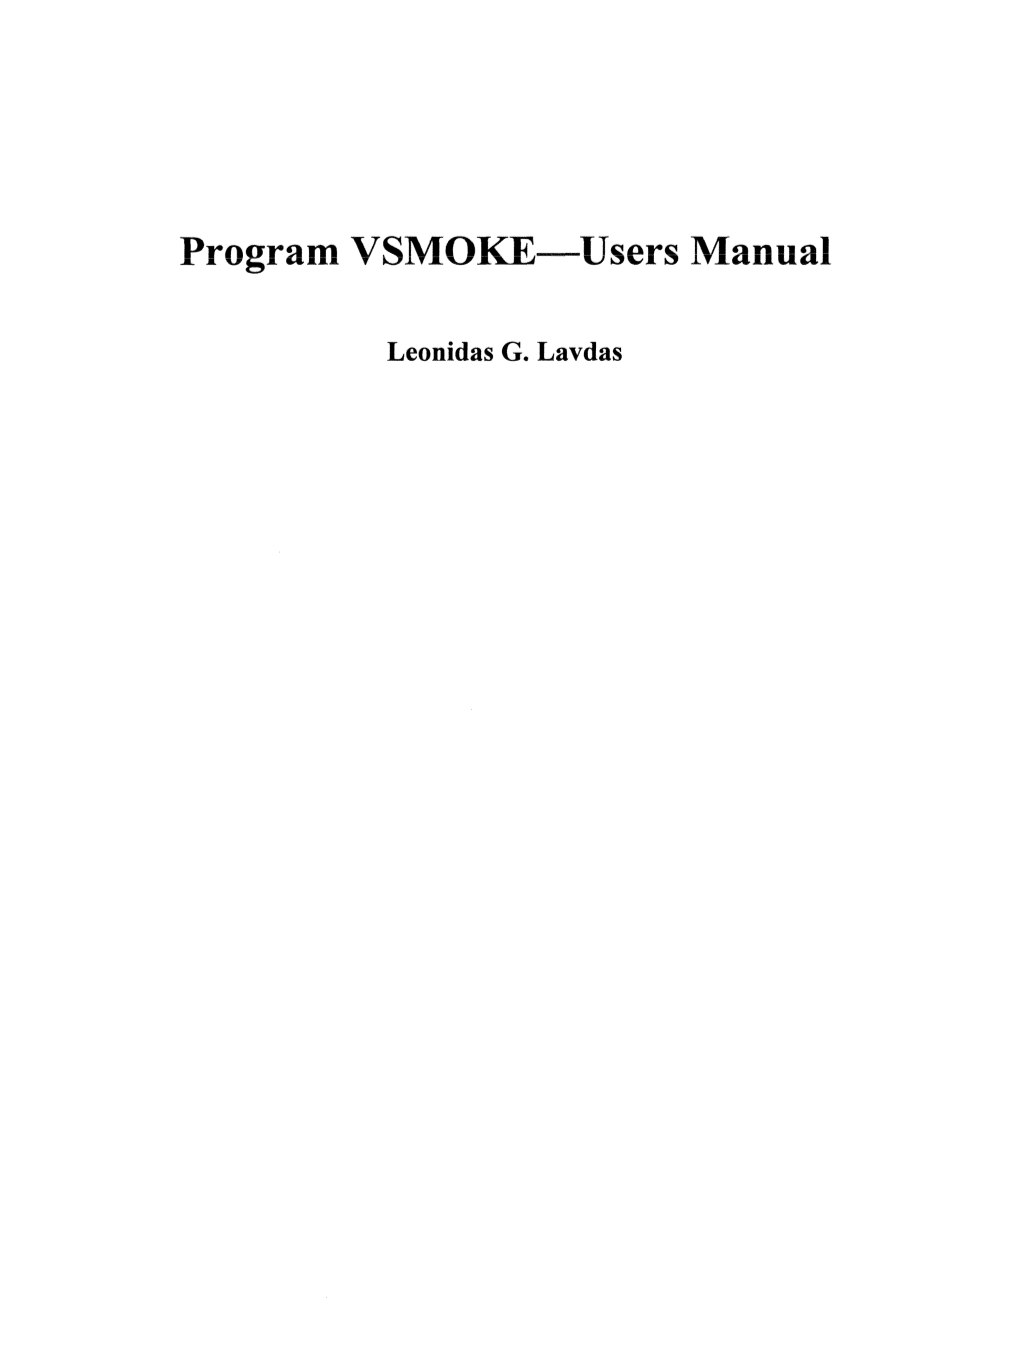 Program VSMO Users Manua